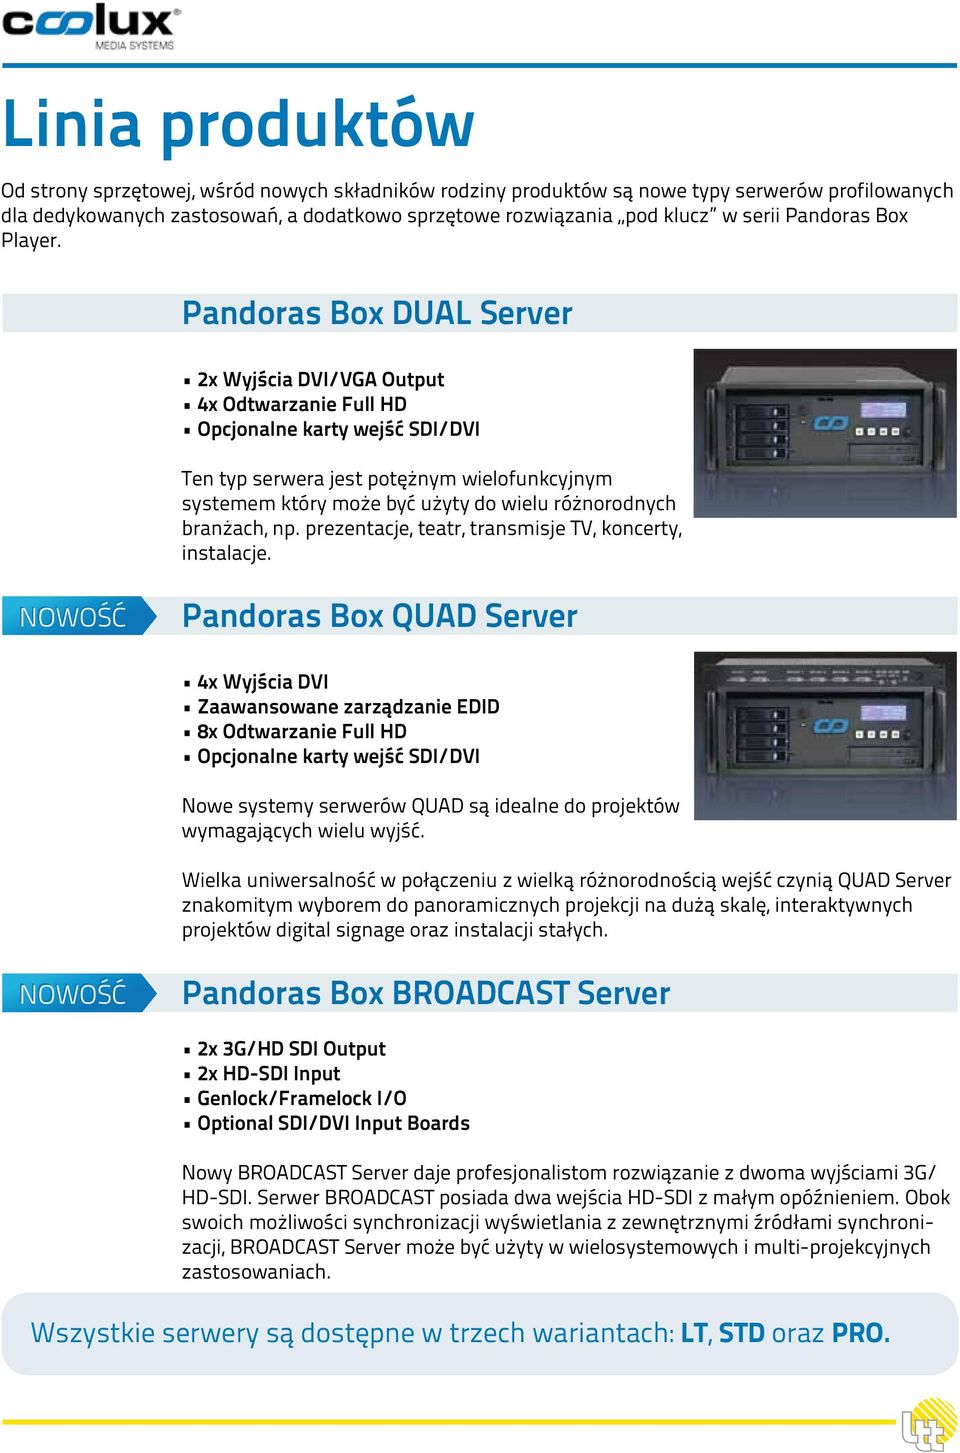 Pandoras Box DUAL Server 2x Wyjścia DVI/VGA Output 4x Odtwarzanie Full HD Opcjonalne karty wejść SDI/DVI Ten typ serwera jest potężnym wielofunkcyjnym systemem który może być użyty do wielu